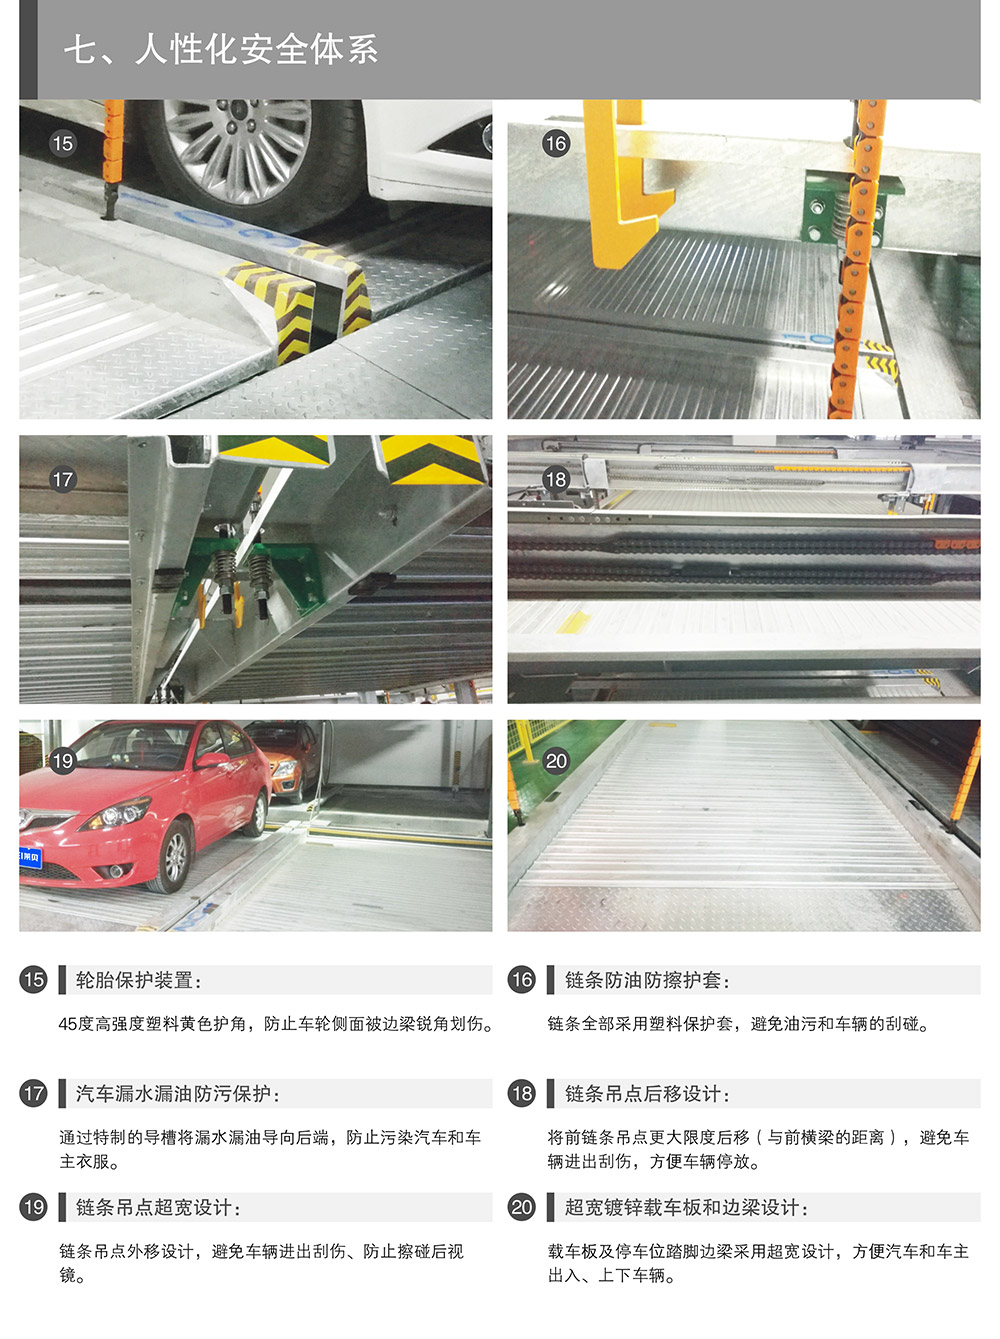 四川成都PSH升降横移立体停车设备人性化安全体系.jpg